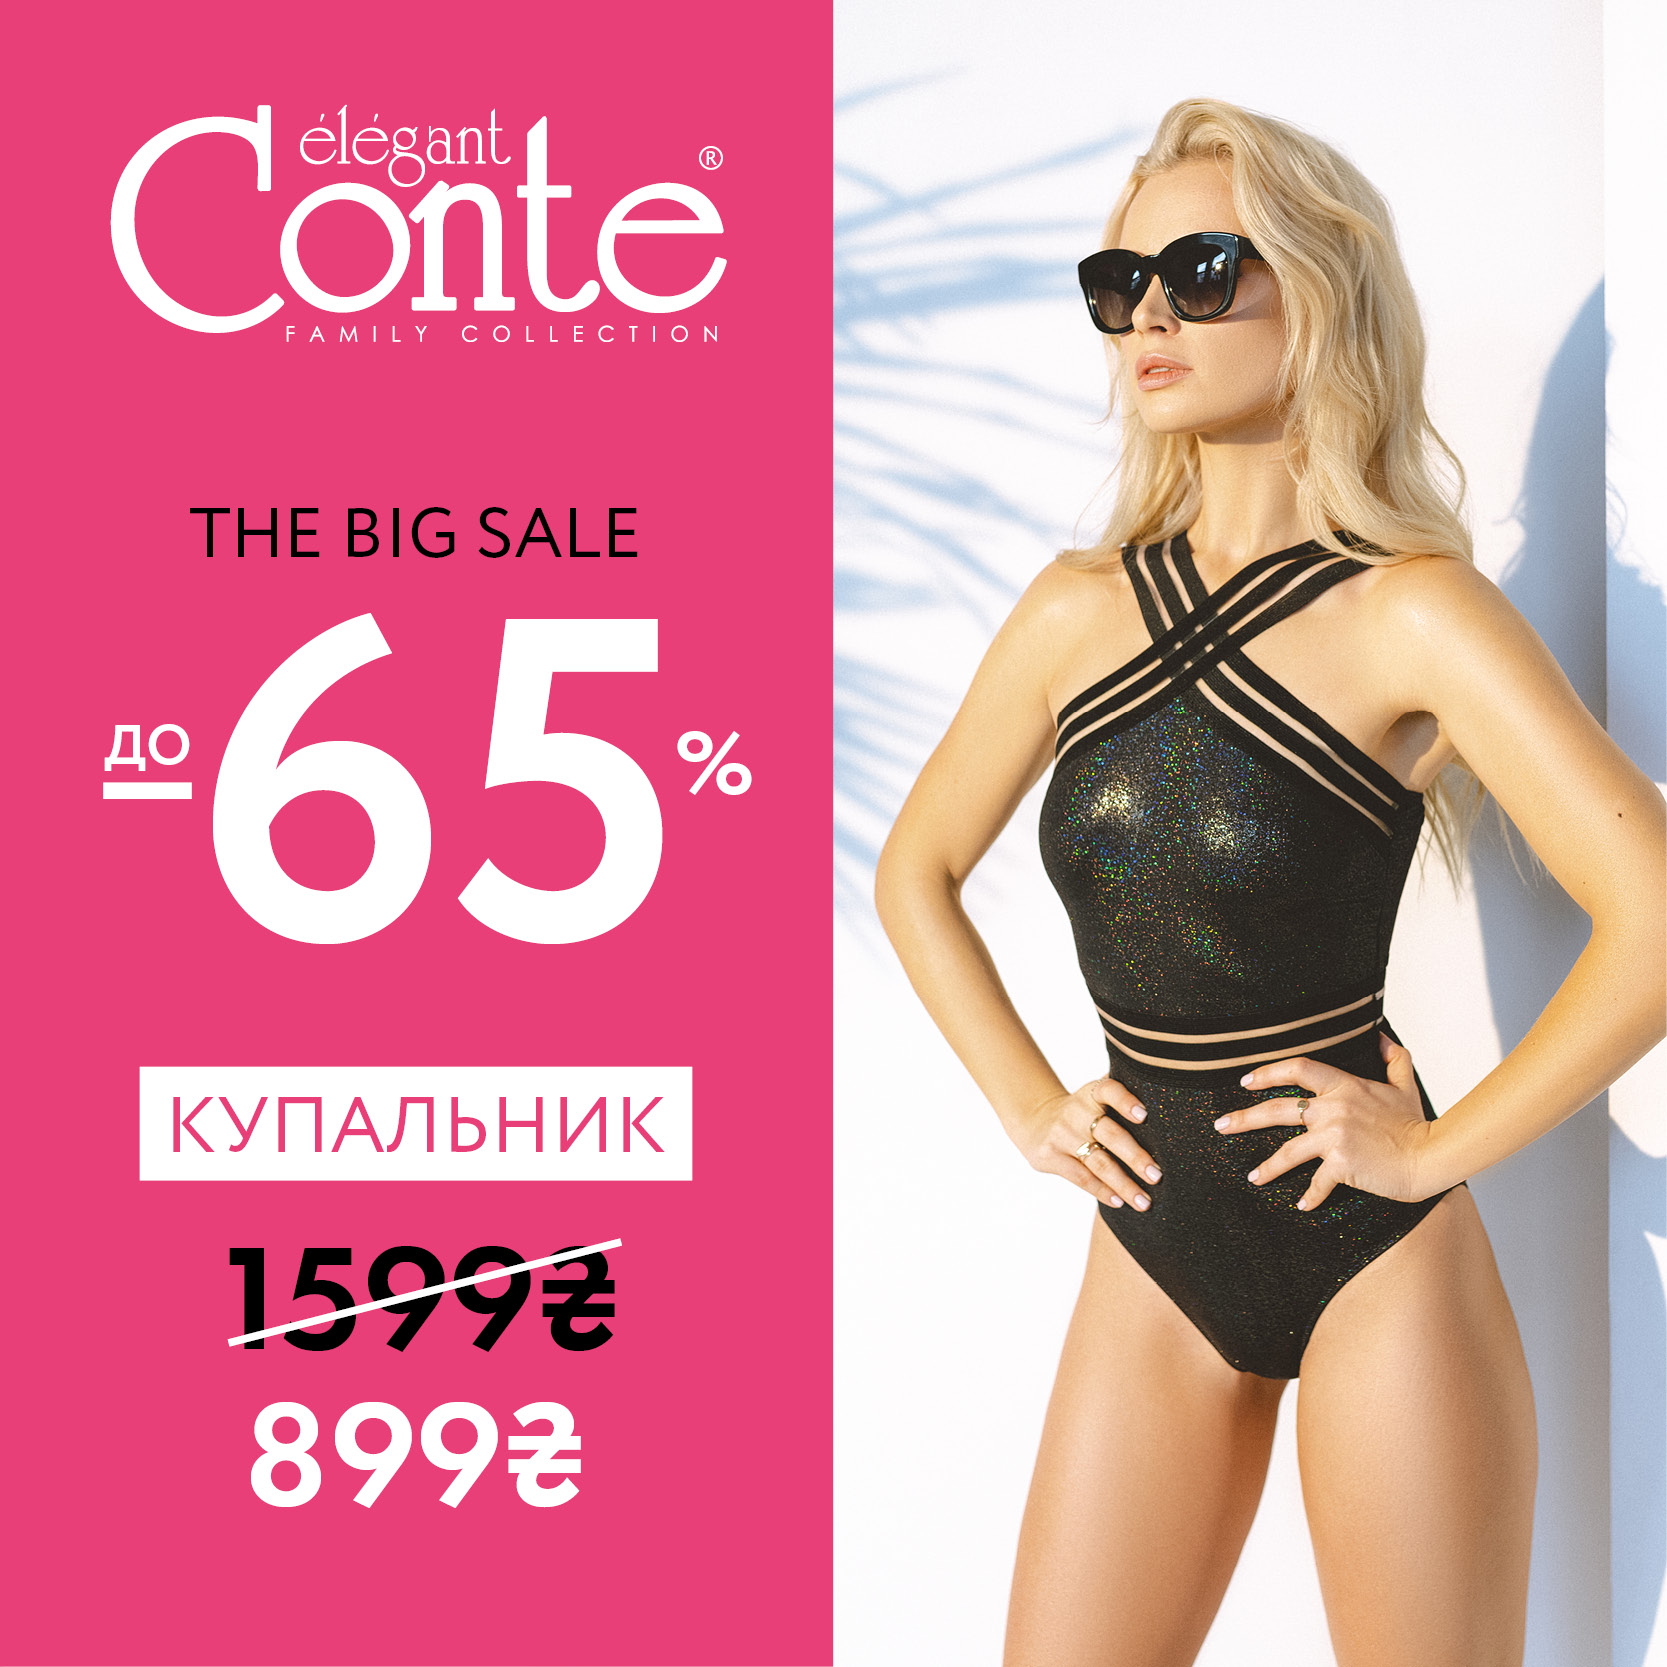 The Big Sale у Conte: знижки до -65%!